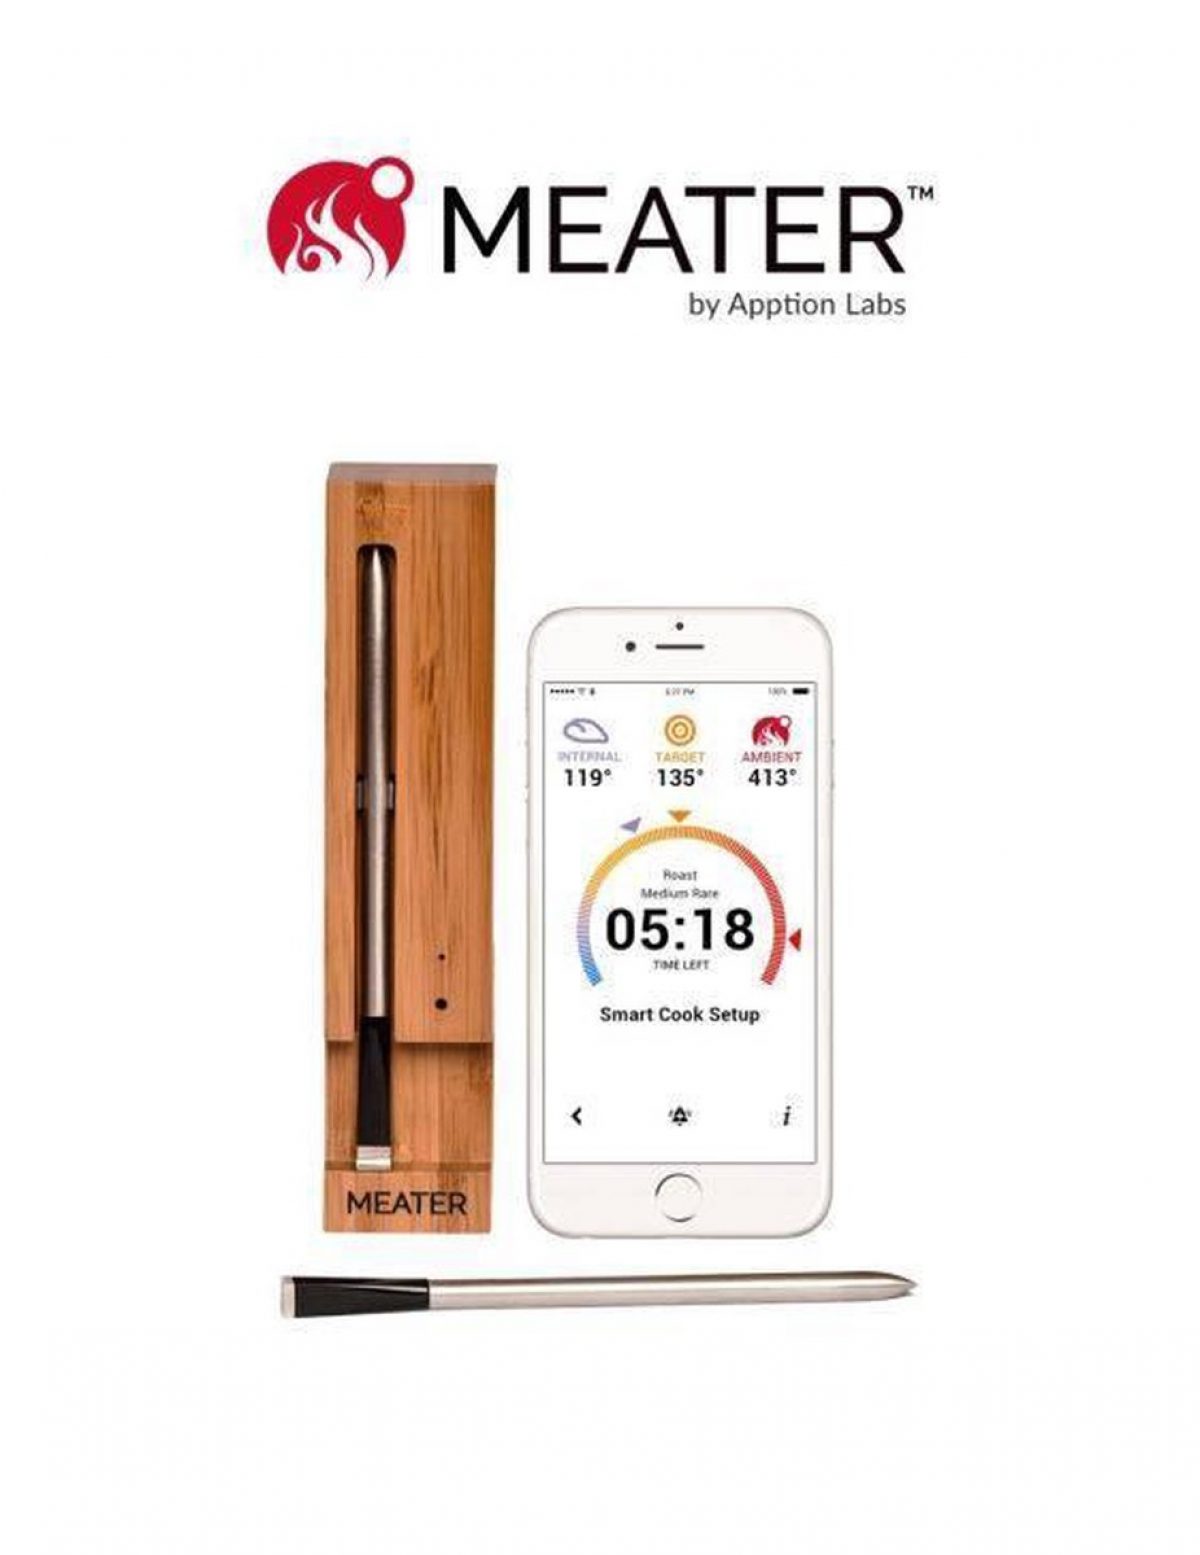 Gedragen Sherlock Holmes Immoraliteit Meater - draadloze thermometer met app - 10 meter - K'OOK!